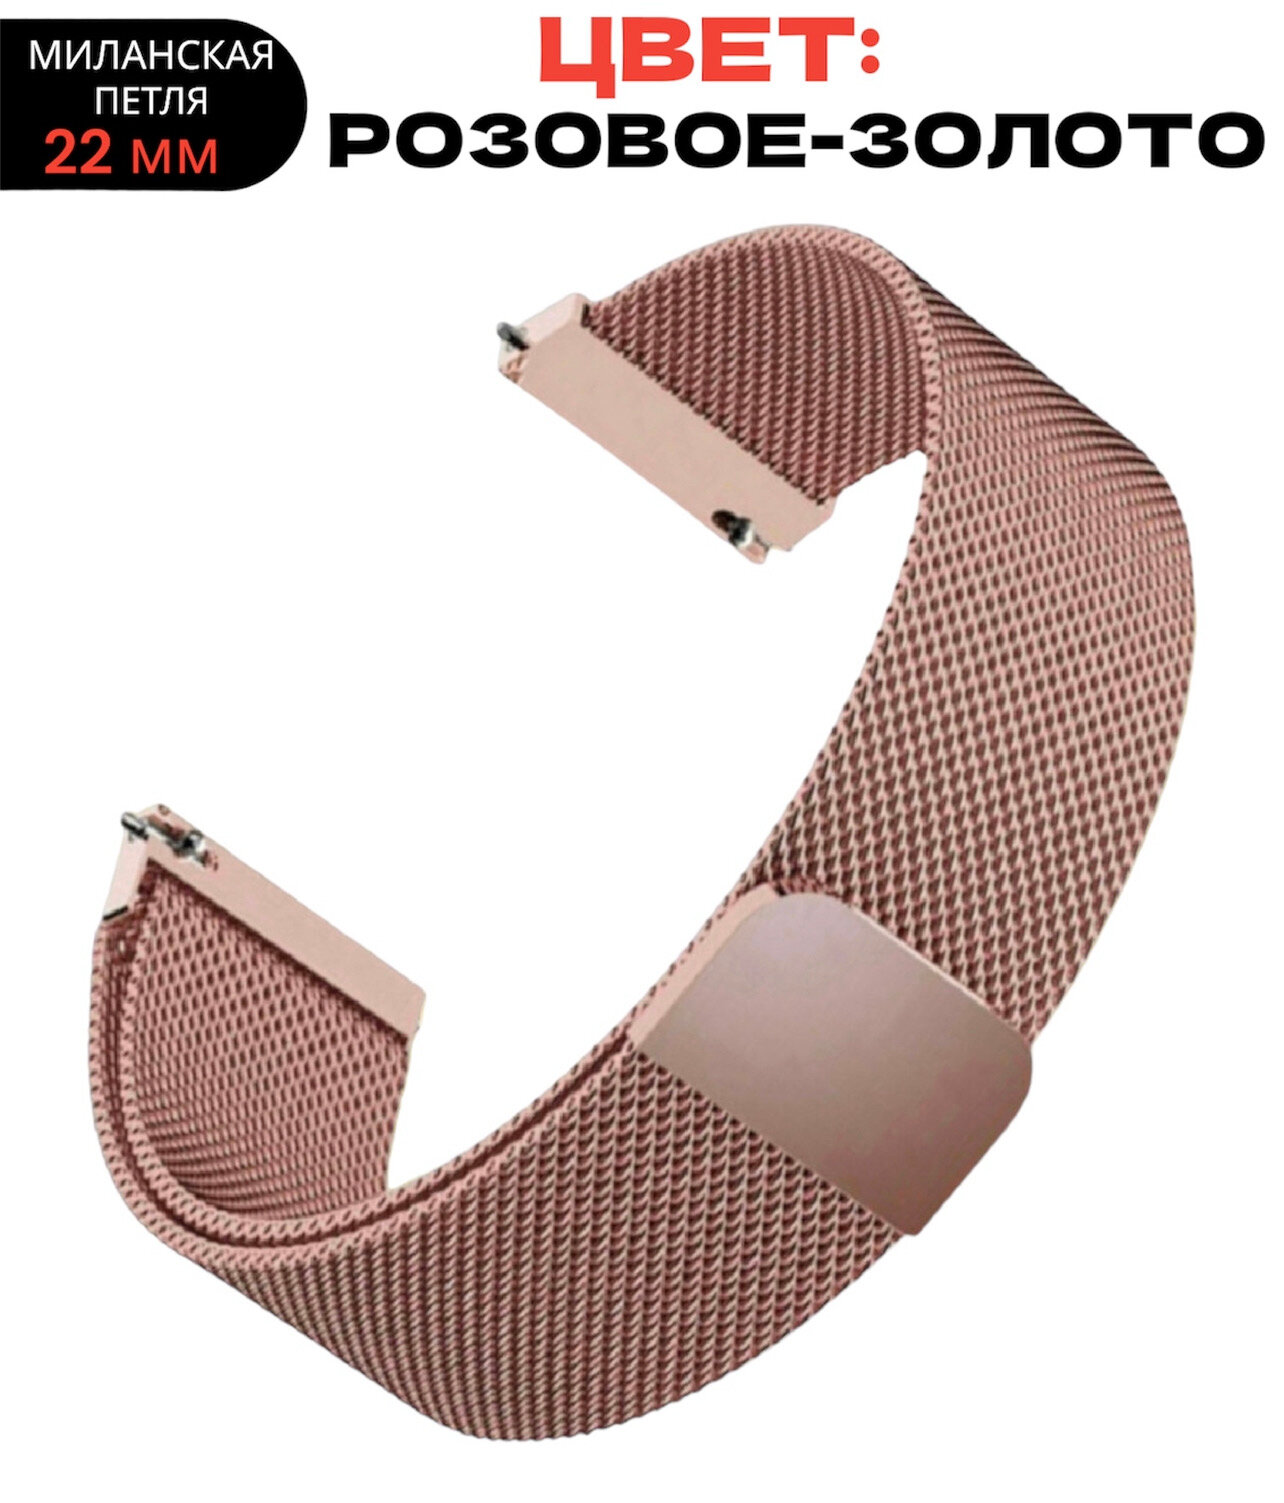 Ремешок для умных часов миланская петля 22 мм/розовое-золото